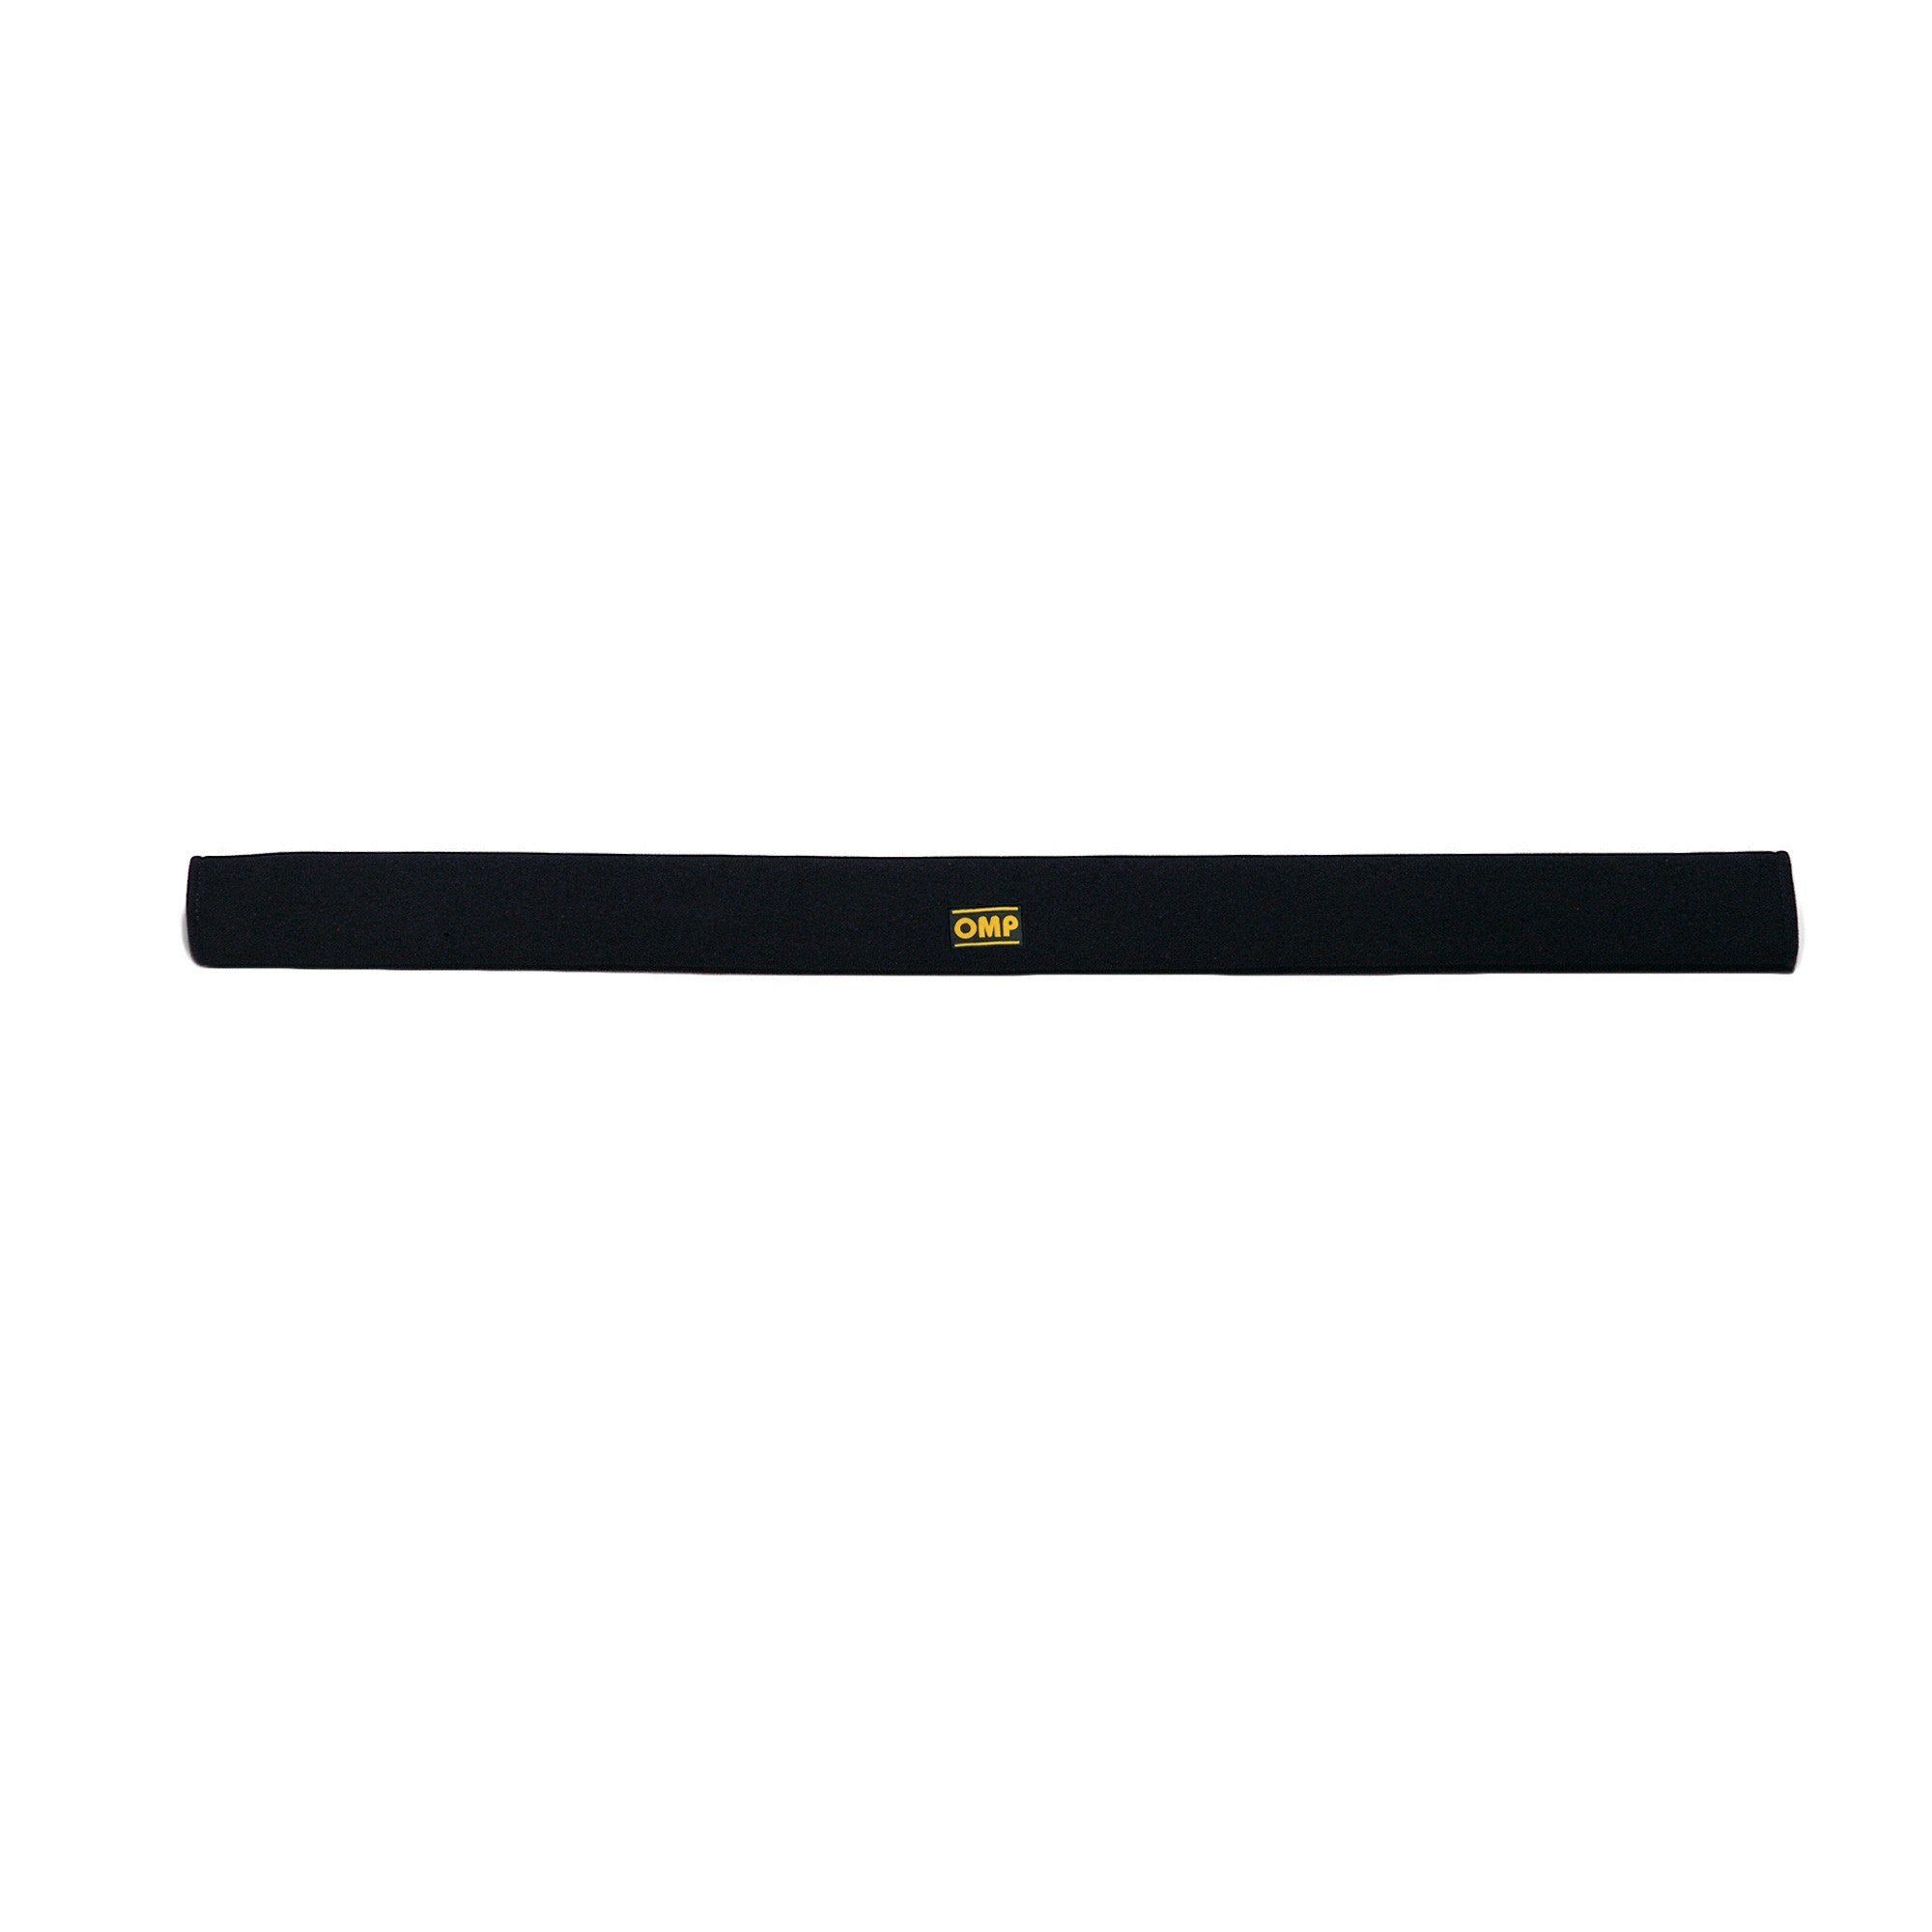 OMP AA0-0113-A01-071 (AA/113/FP/N) Door bar covers AA/113, 1000mm, black Photo-0 